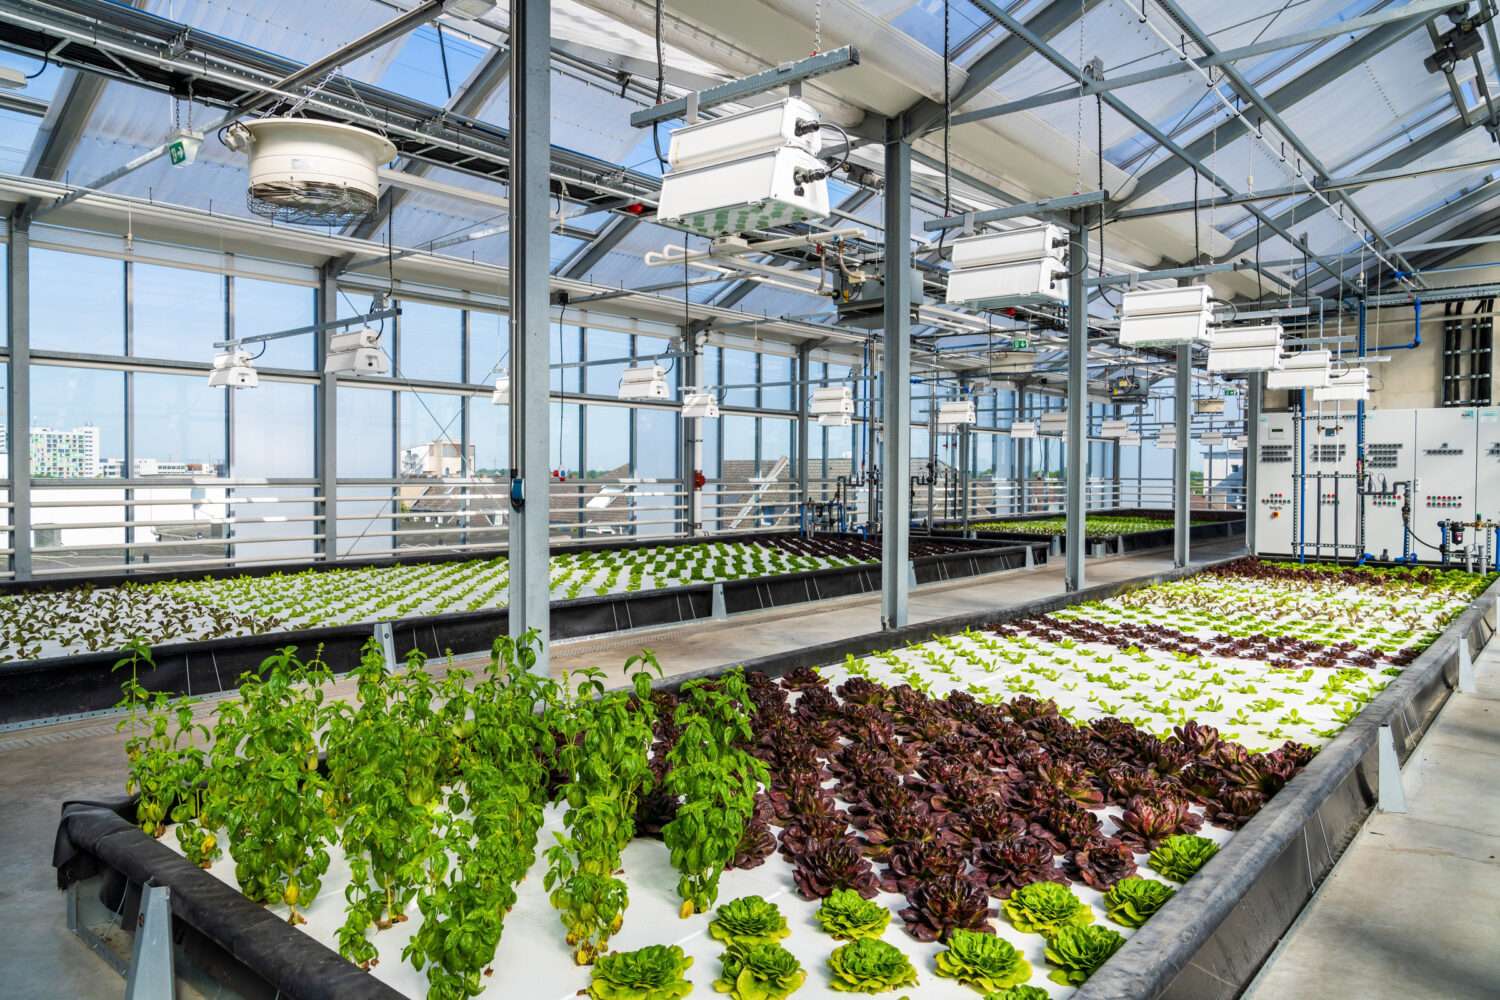 Frank-Rogner-scaled Vertical Farming: Obst und Gemüse unter einem Dach